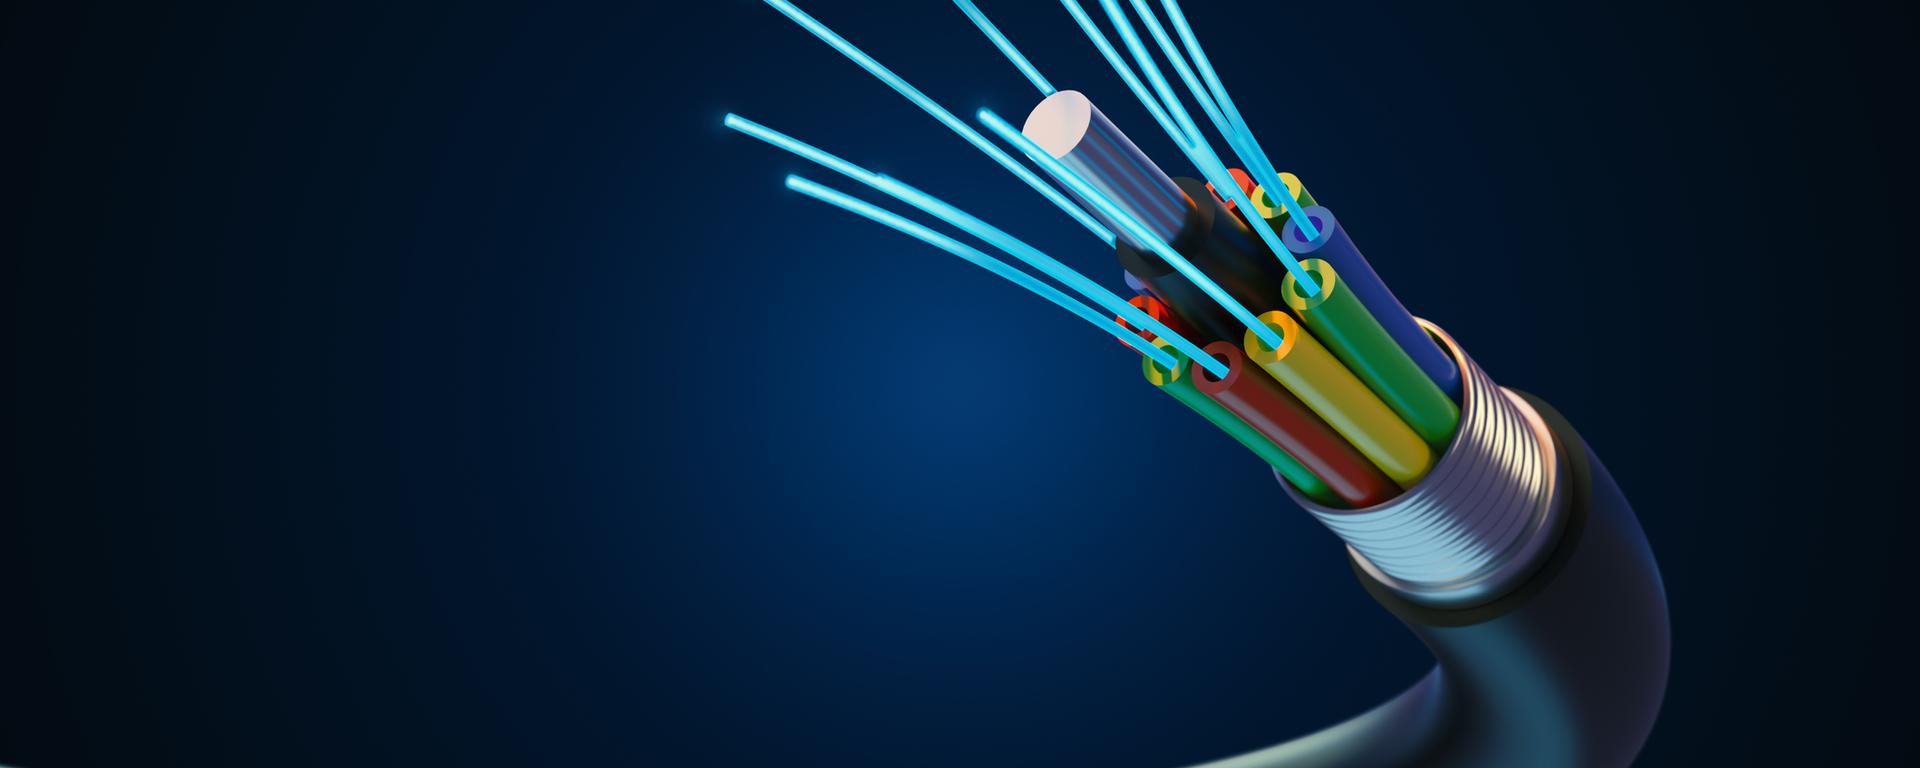 ¿Qué planes tiene Claro este año para expandir su cobertura de fibra óptica?